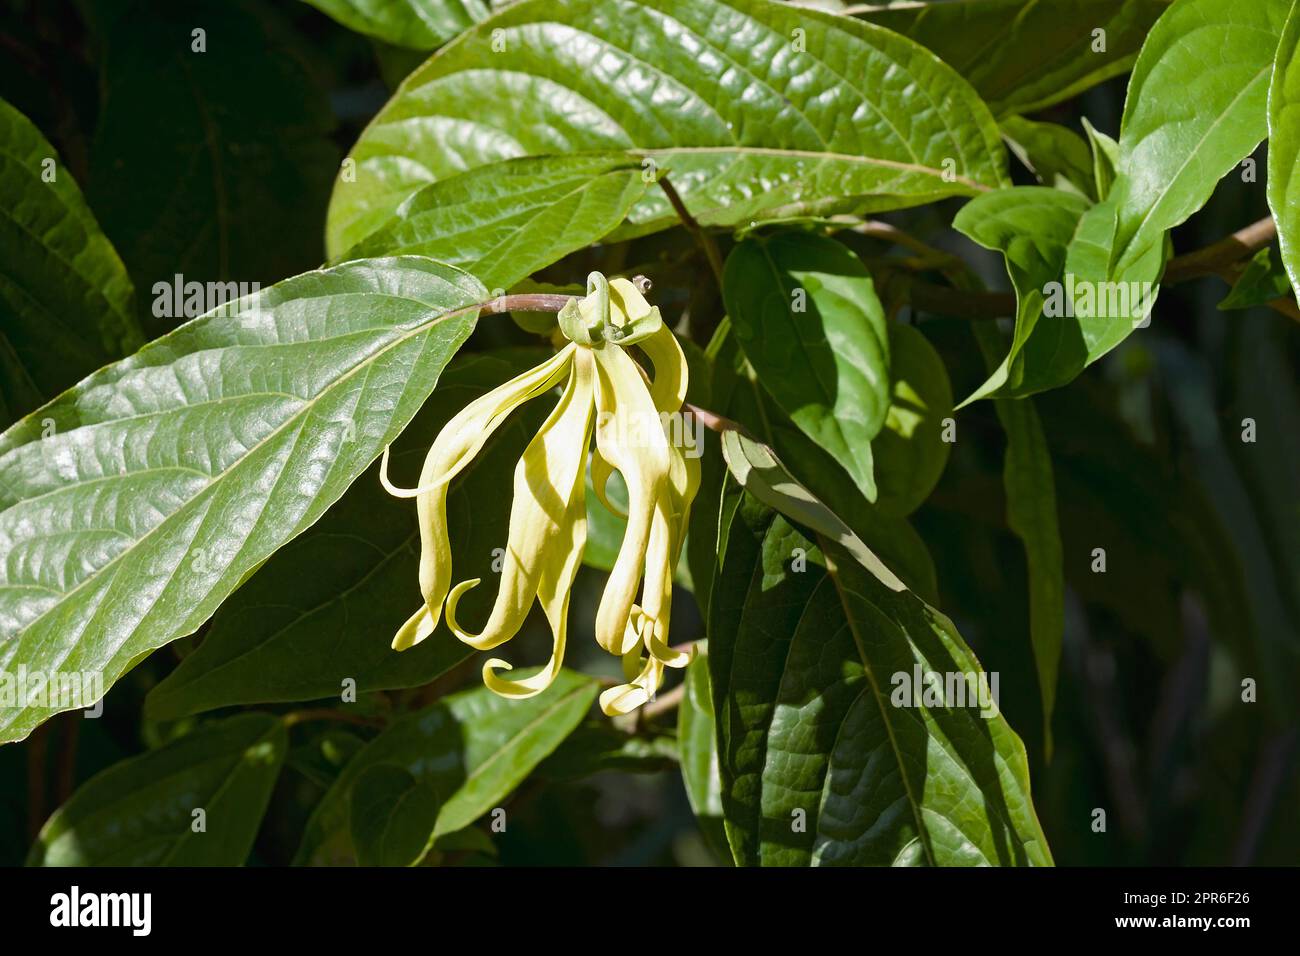 Close-up image of Cananga tree flower Stock Photo